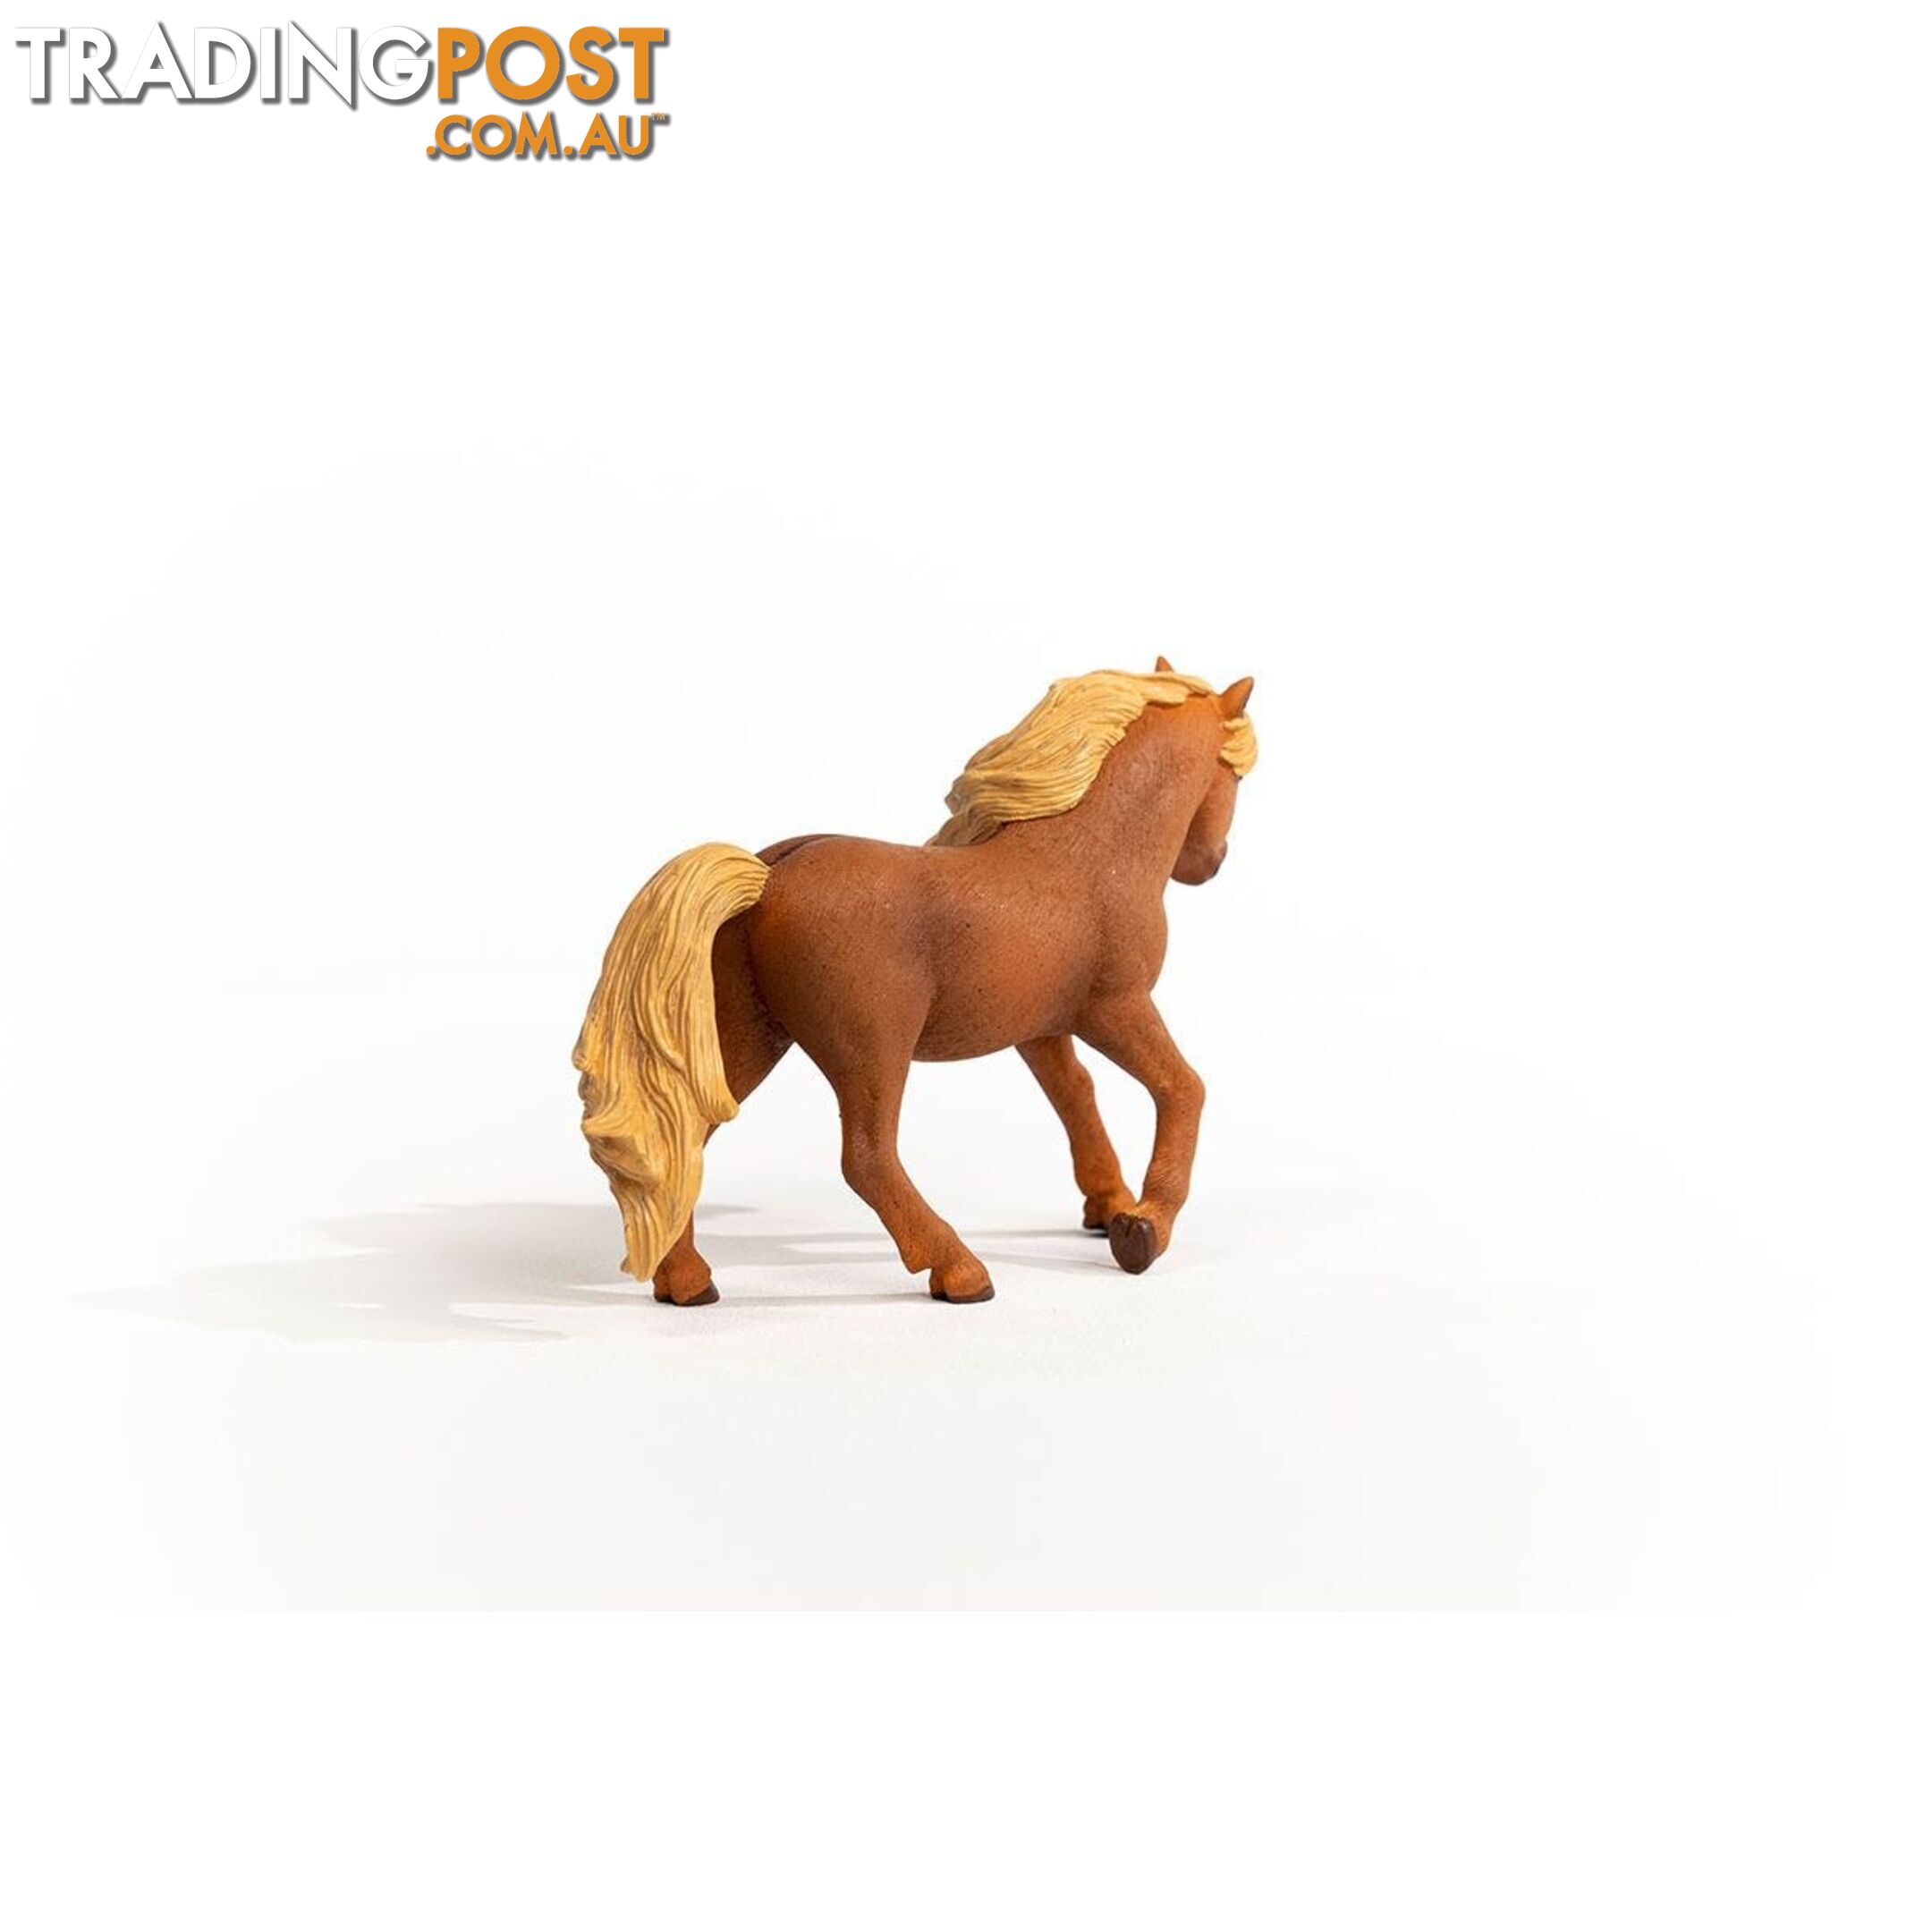 Schleich - Icelandic Pony Stallion Figurine - Mdsc13943 - 4059433484648